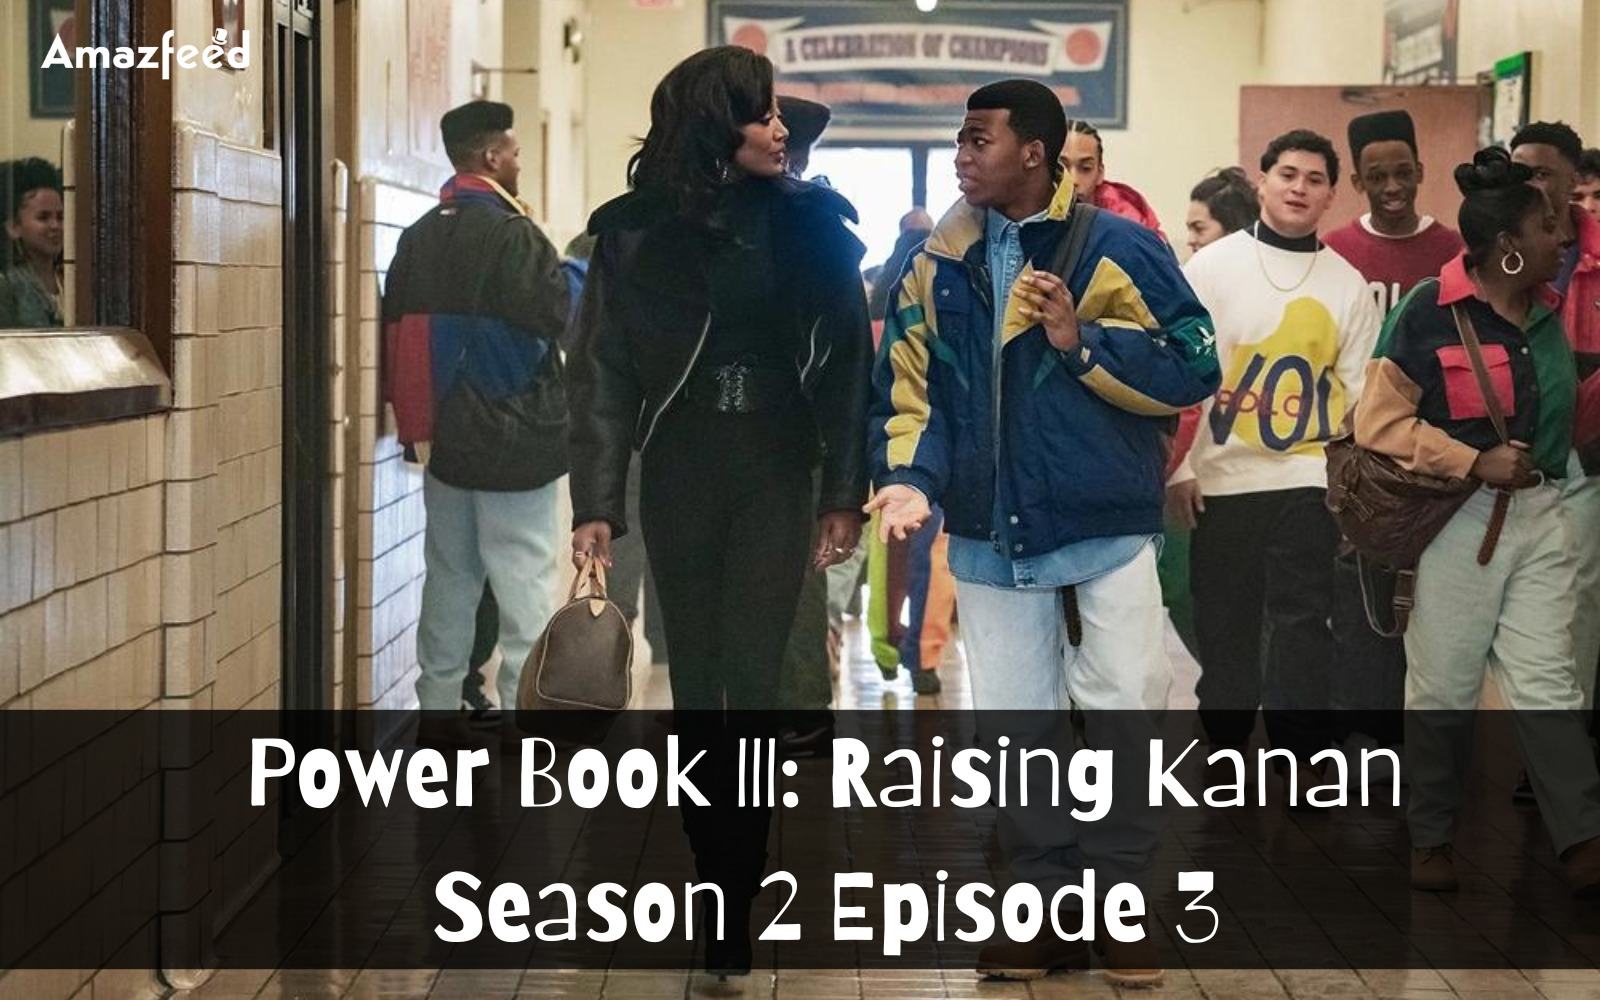 Power Book III Raising Kanan Season 2 Episode 3 Expected Release date & time